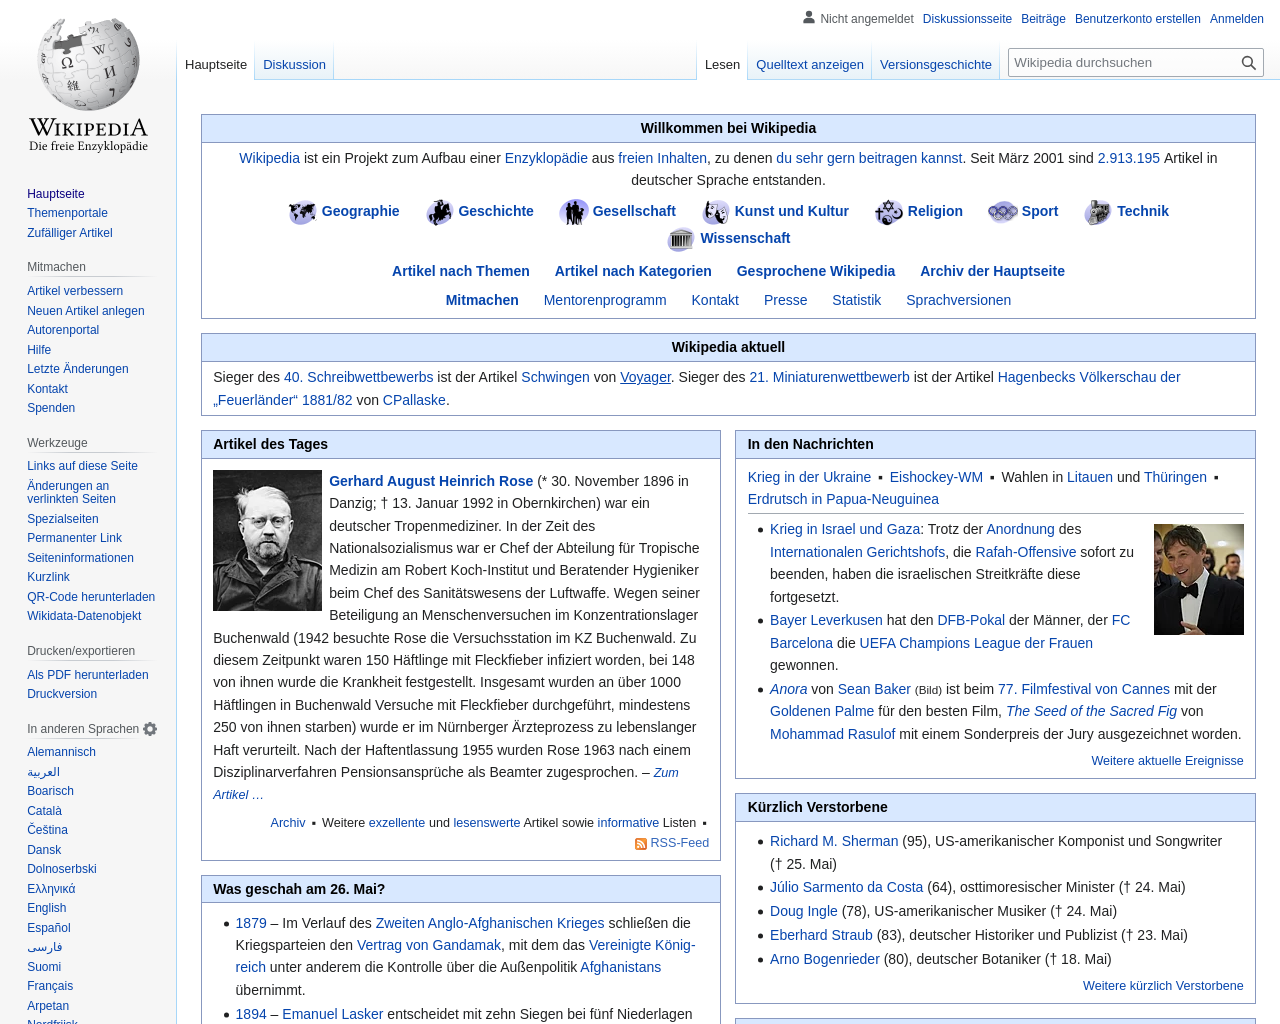 de.wikipedia.org